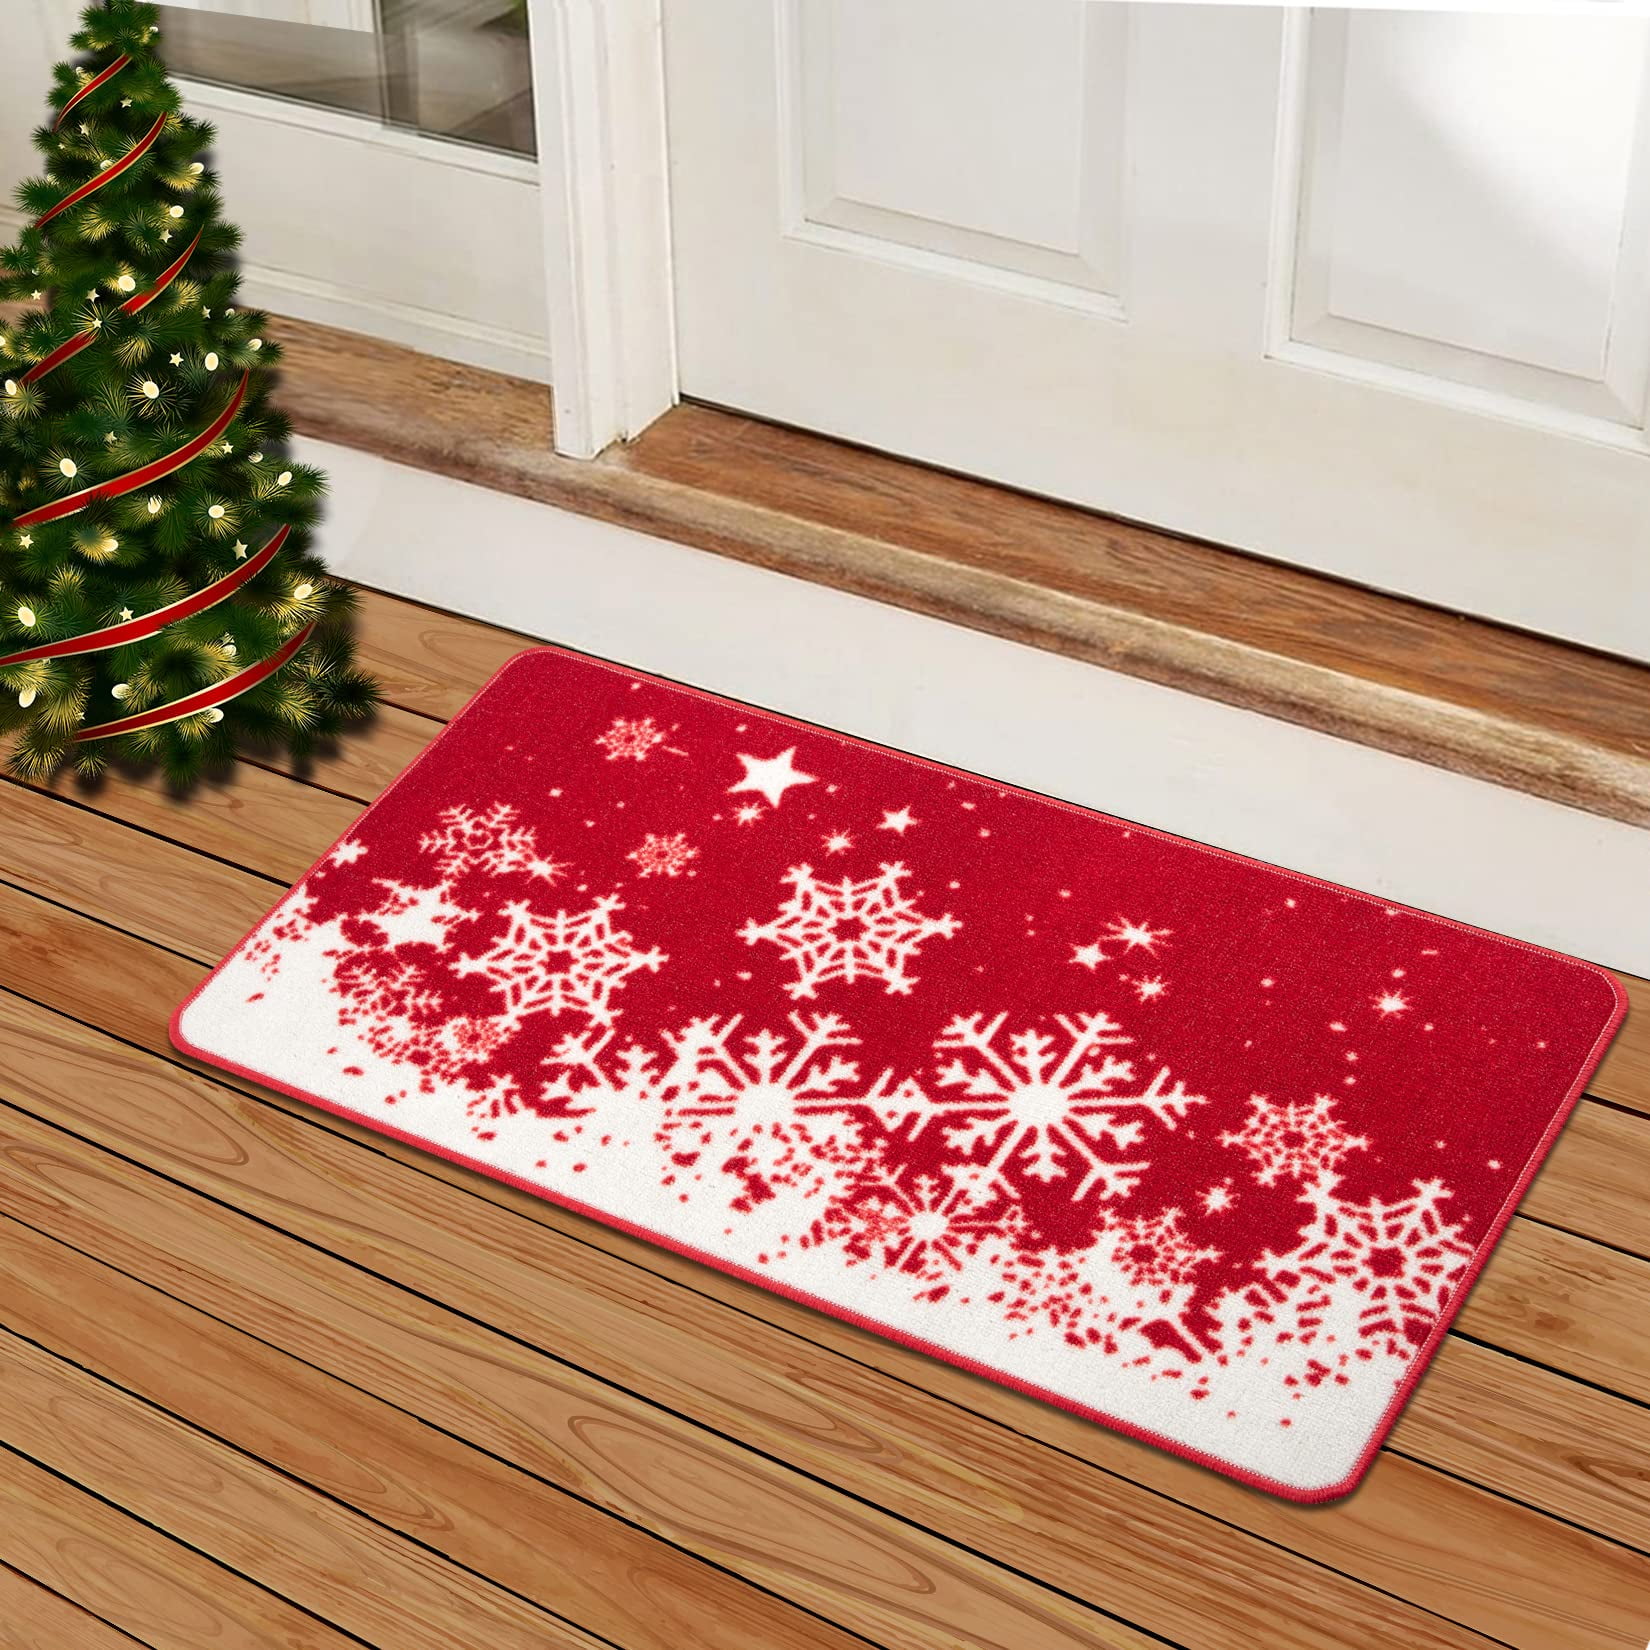 Aimlata Christmas Door Mat Winter Holiday Doormat Indoor Outdoor Entrance Rugs Welcome Mats, Size: 23.6*35.4/60*90cm, Red